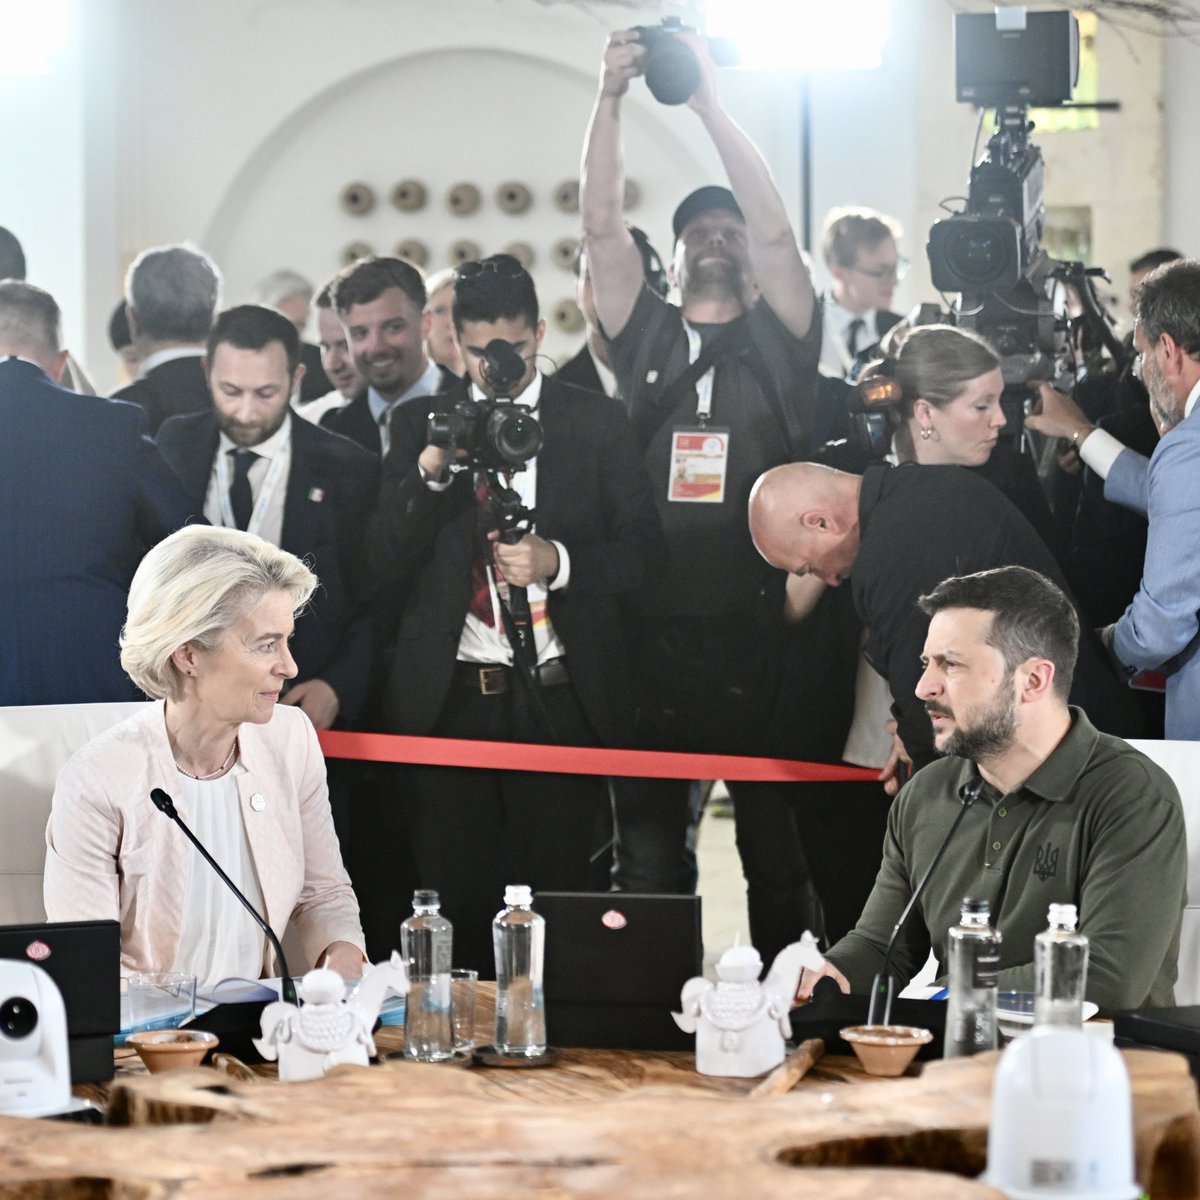 Ursula von der Leyen: El G7 acordó conceder a Ucrania préstamos por valor de unos 50.000 millones de dólares hasta finales de año. Usaremos las ganancias inesperadas de los activos soberanos de Rusia para reembolsarlos. Esto se basa en la acción de la UE, donde ya estamos dirigiendo estos beneficios extraordinarios a la defensa y la reconstrucción de Ucrania.